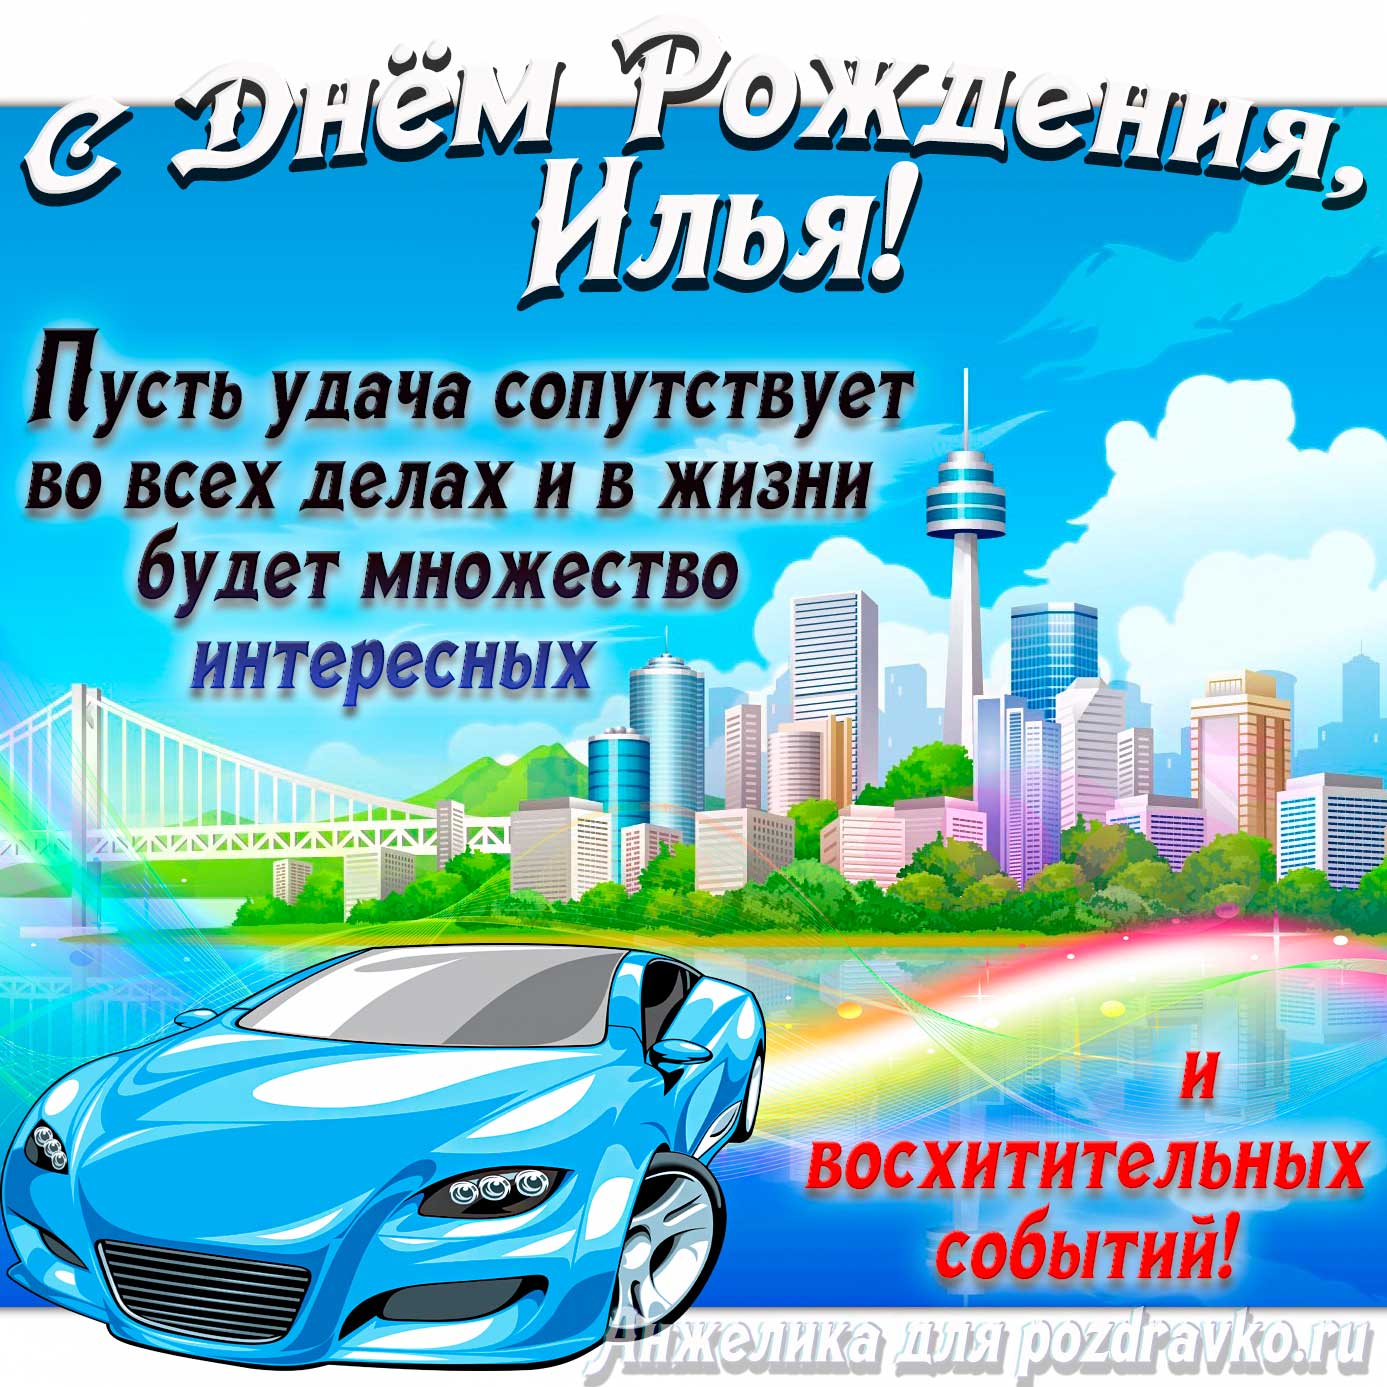 Открытка - с Днём Рождения Илья с голубой машиной и пожеланием. Скачать бесплатно или отправить картинку.